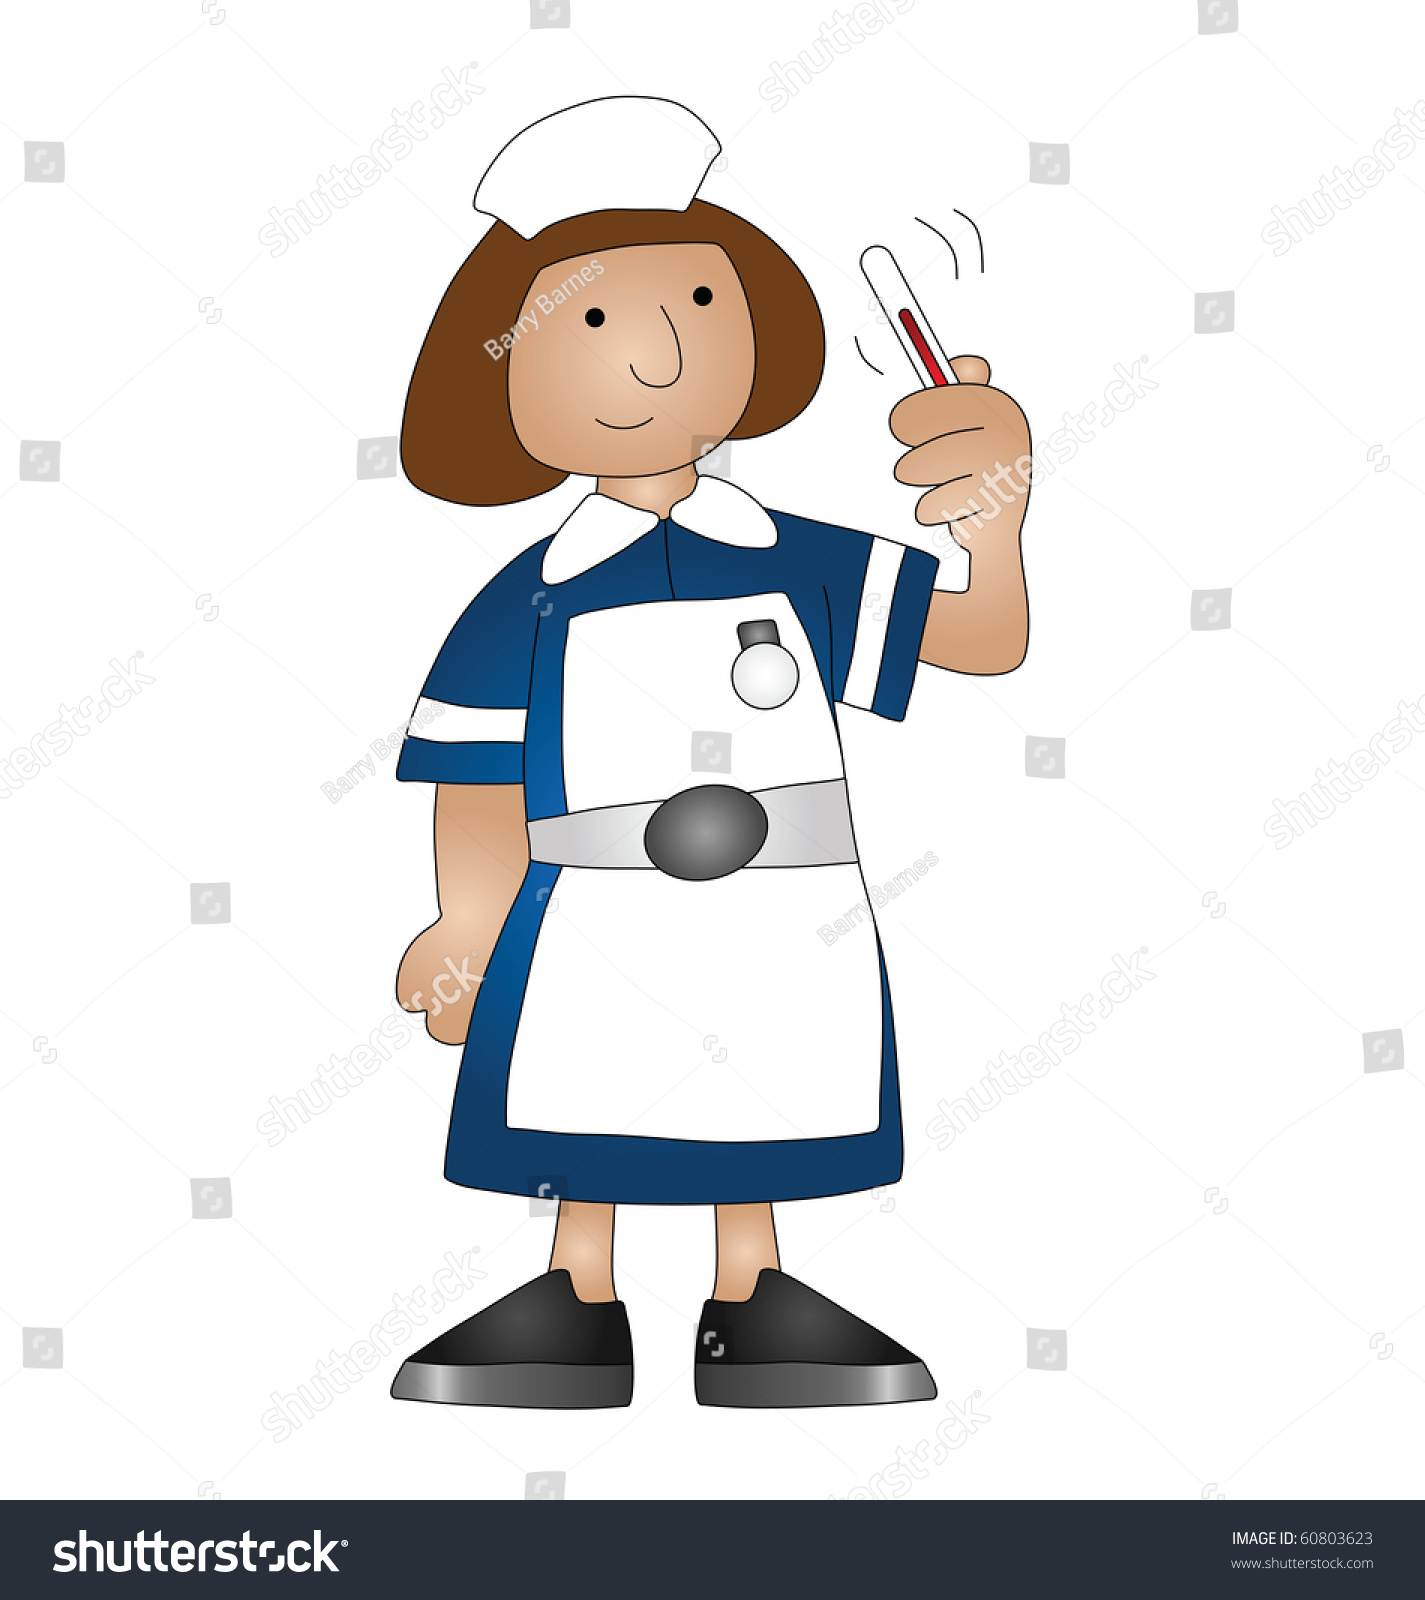 Cartoon Medical Nurse Isolated On White Background Stock Photo 60803623